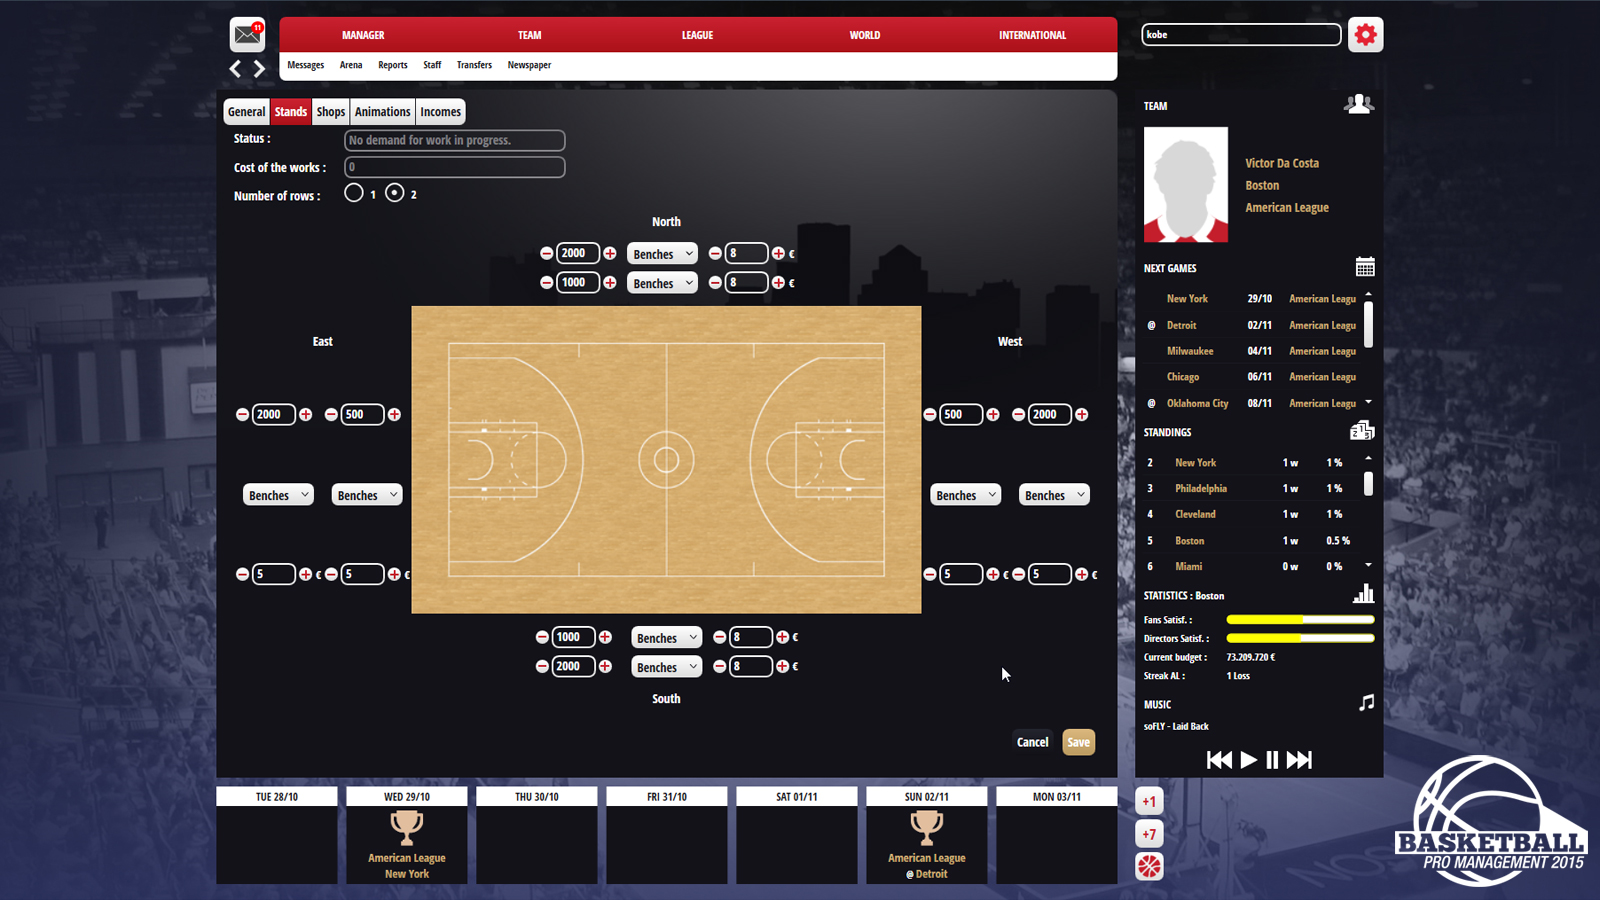 Basketball Pro Management 2015 HD wallpapers, Desktop wallpaper - most viewed